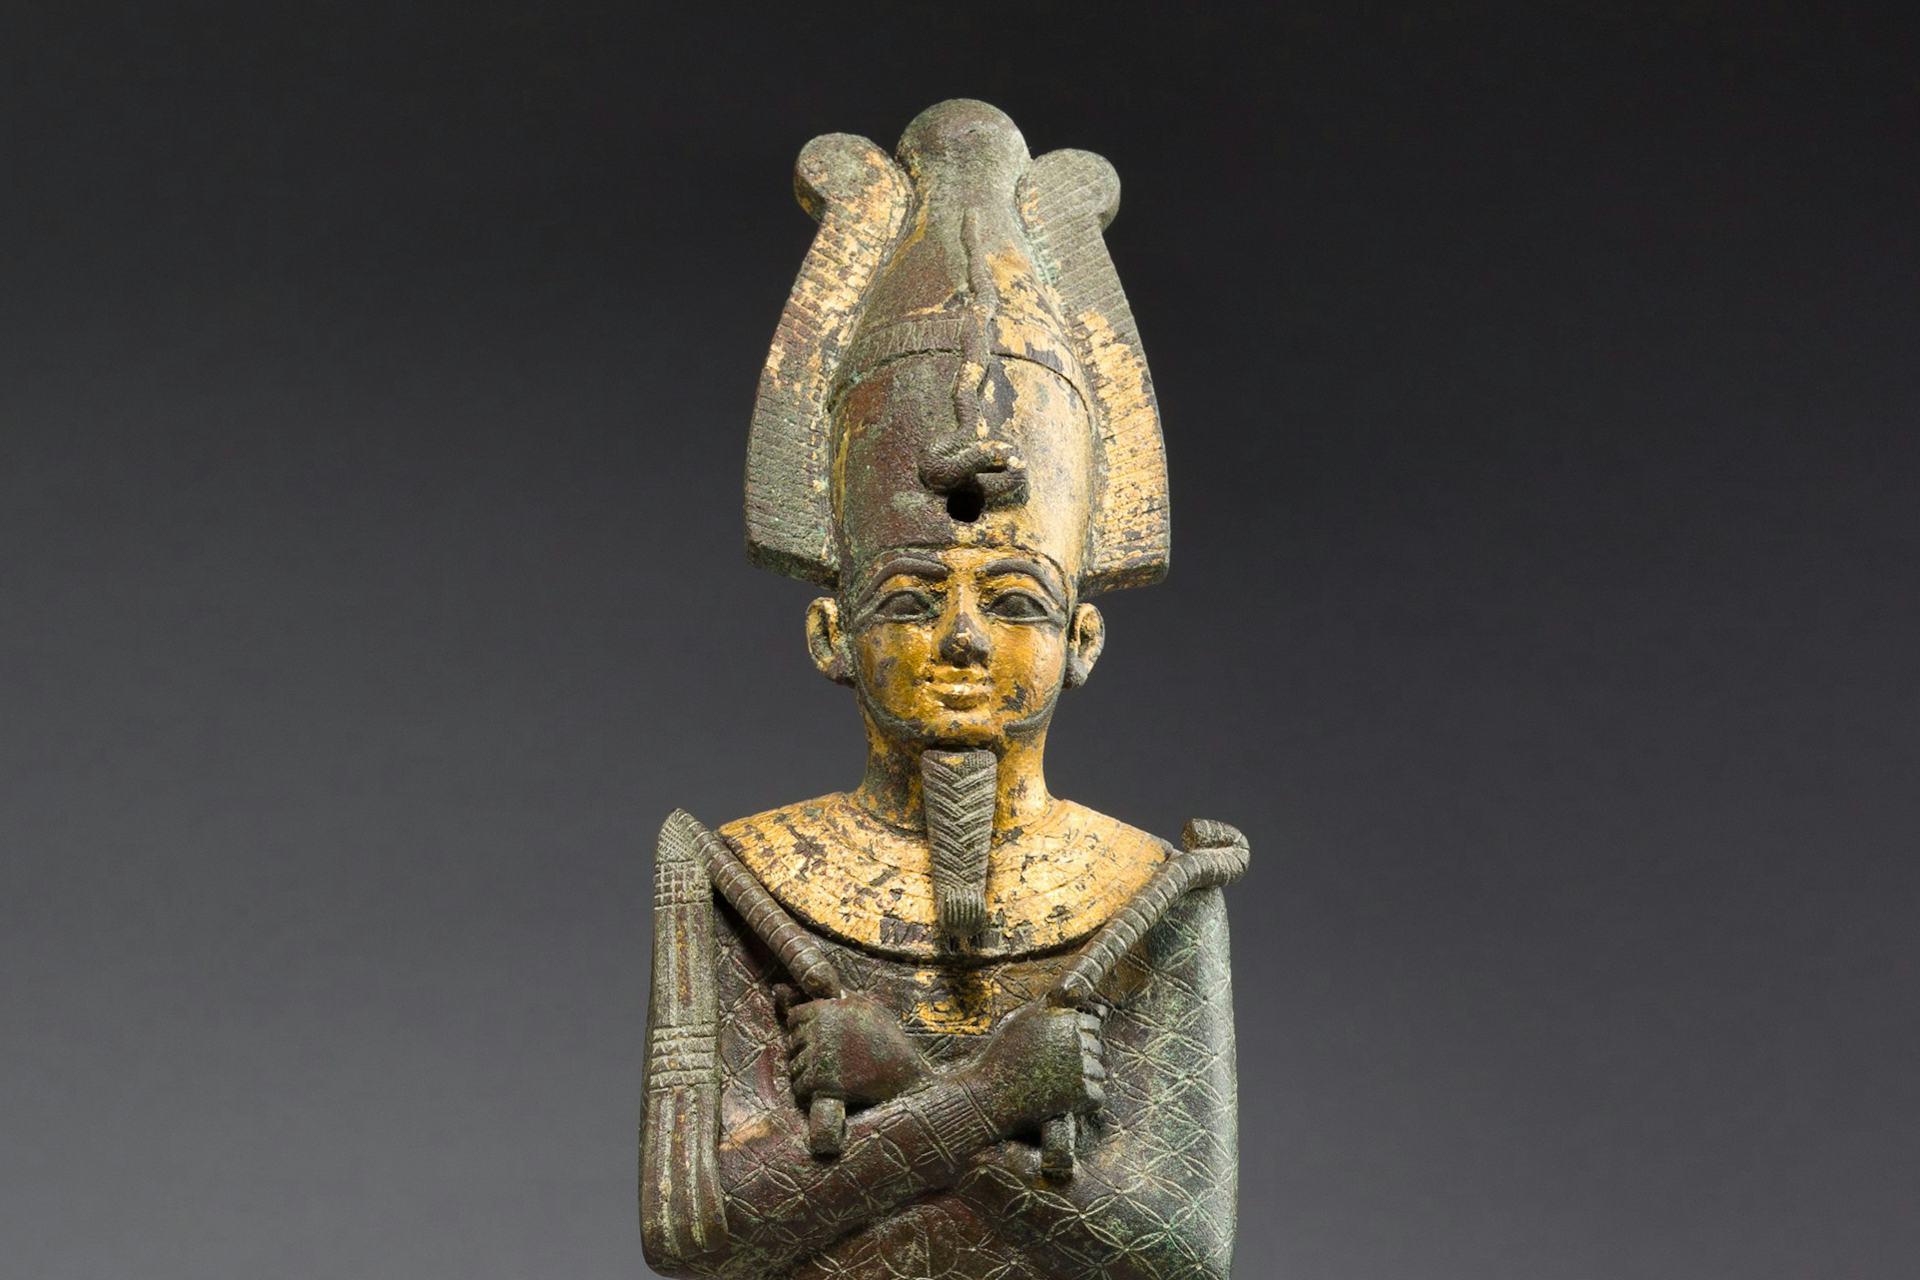 Egyptian Mythology Hero Image